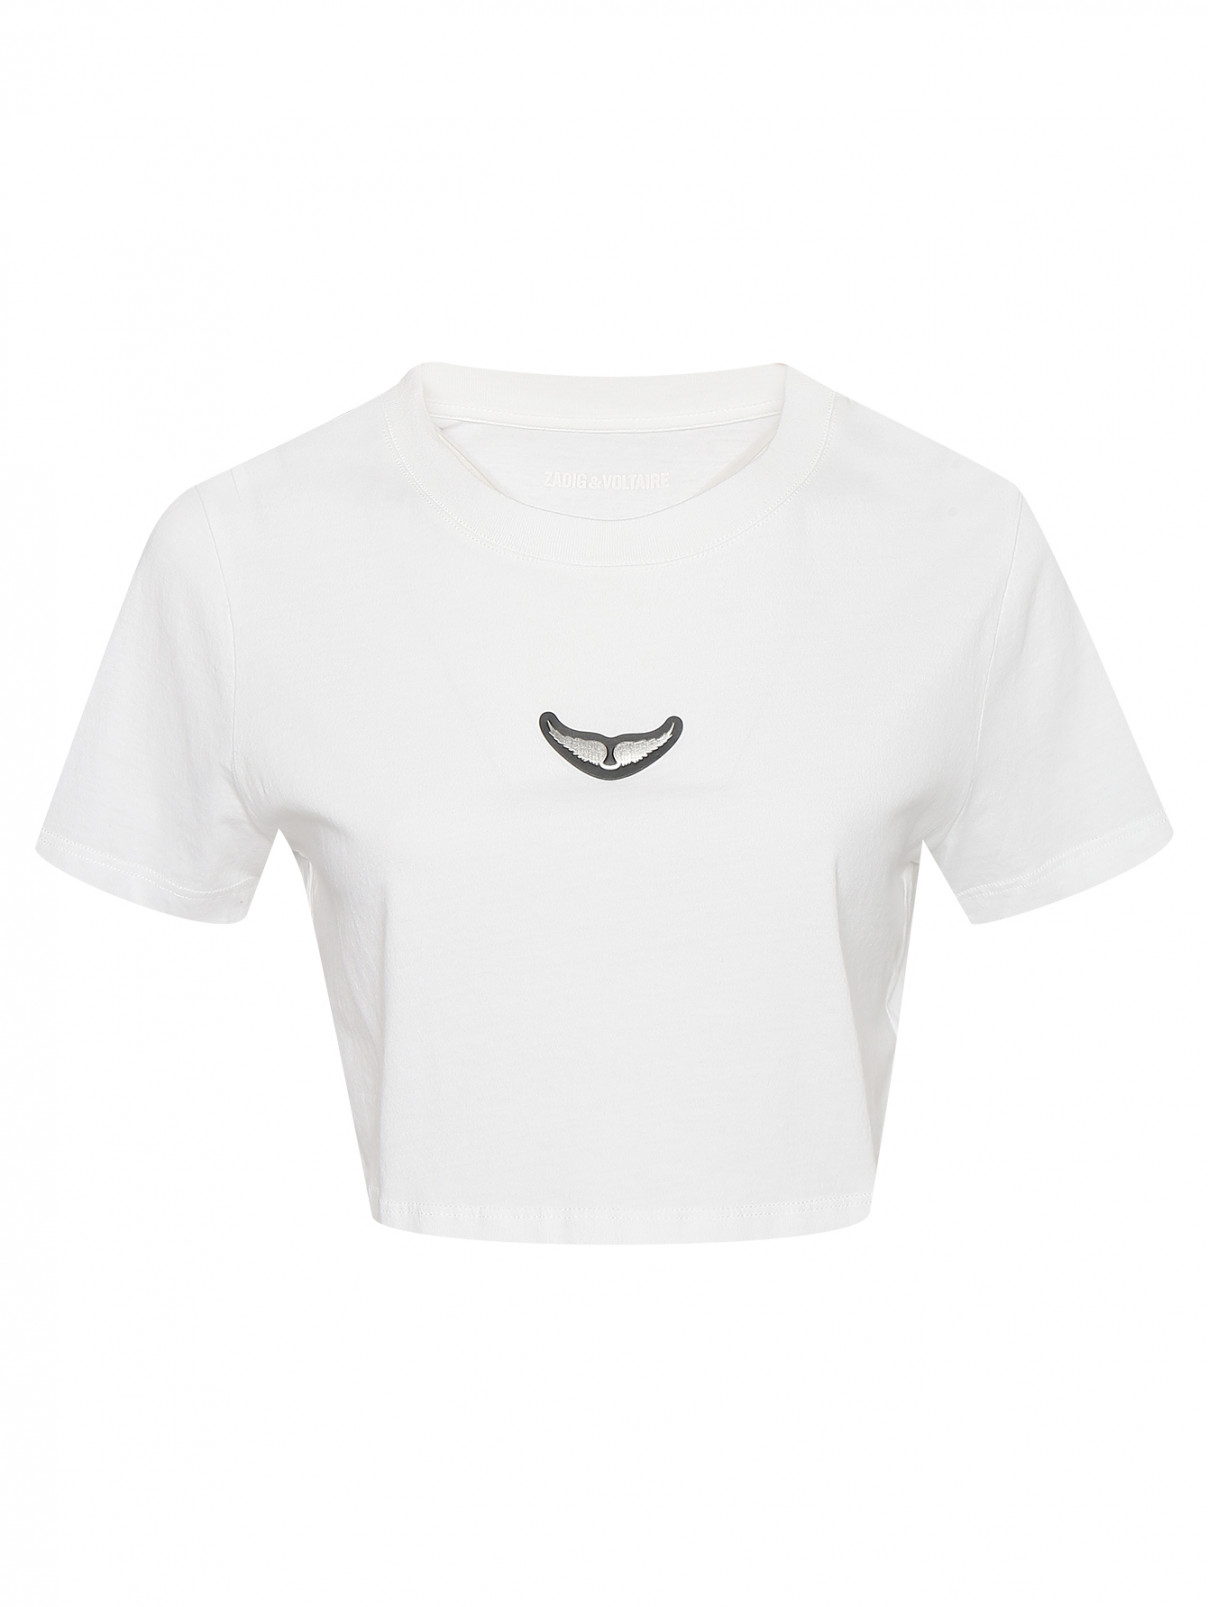 Укороченная футболка из хлопка с логотипом Zadig&Voltaire  –  Общий вид  – Цвет:  Белый